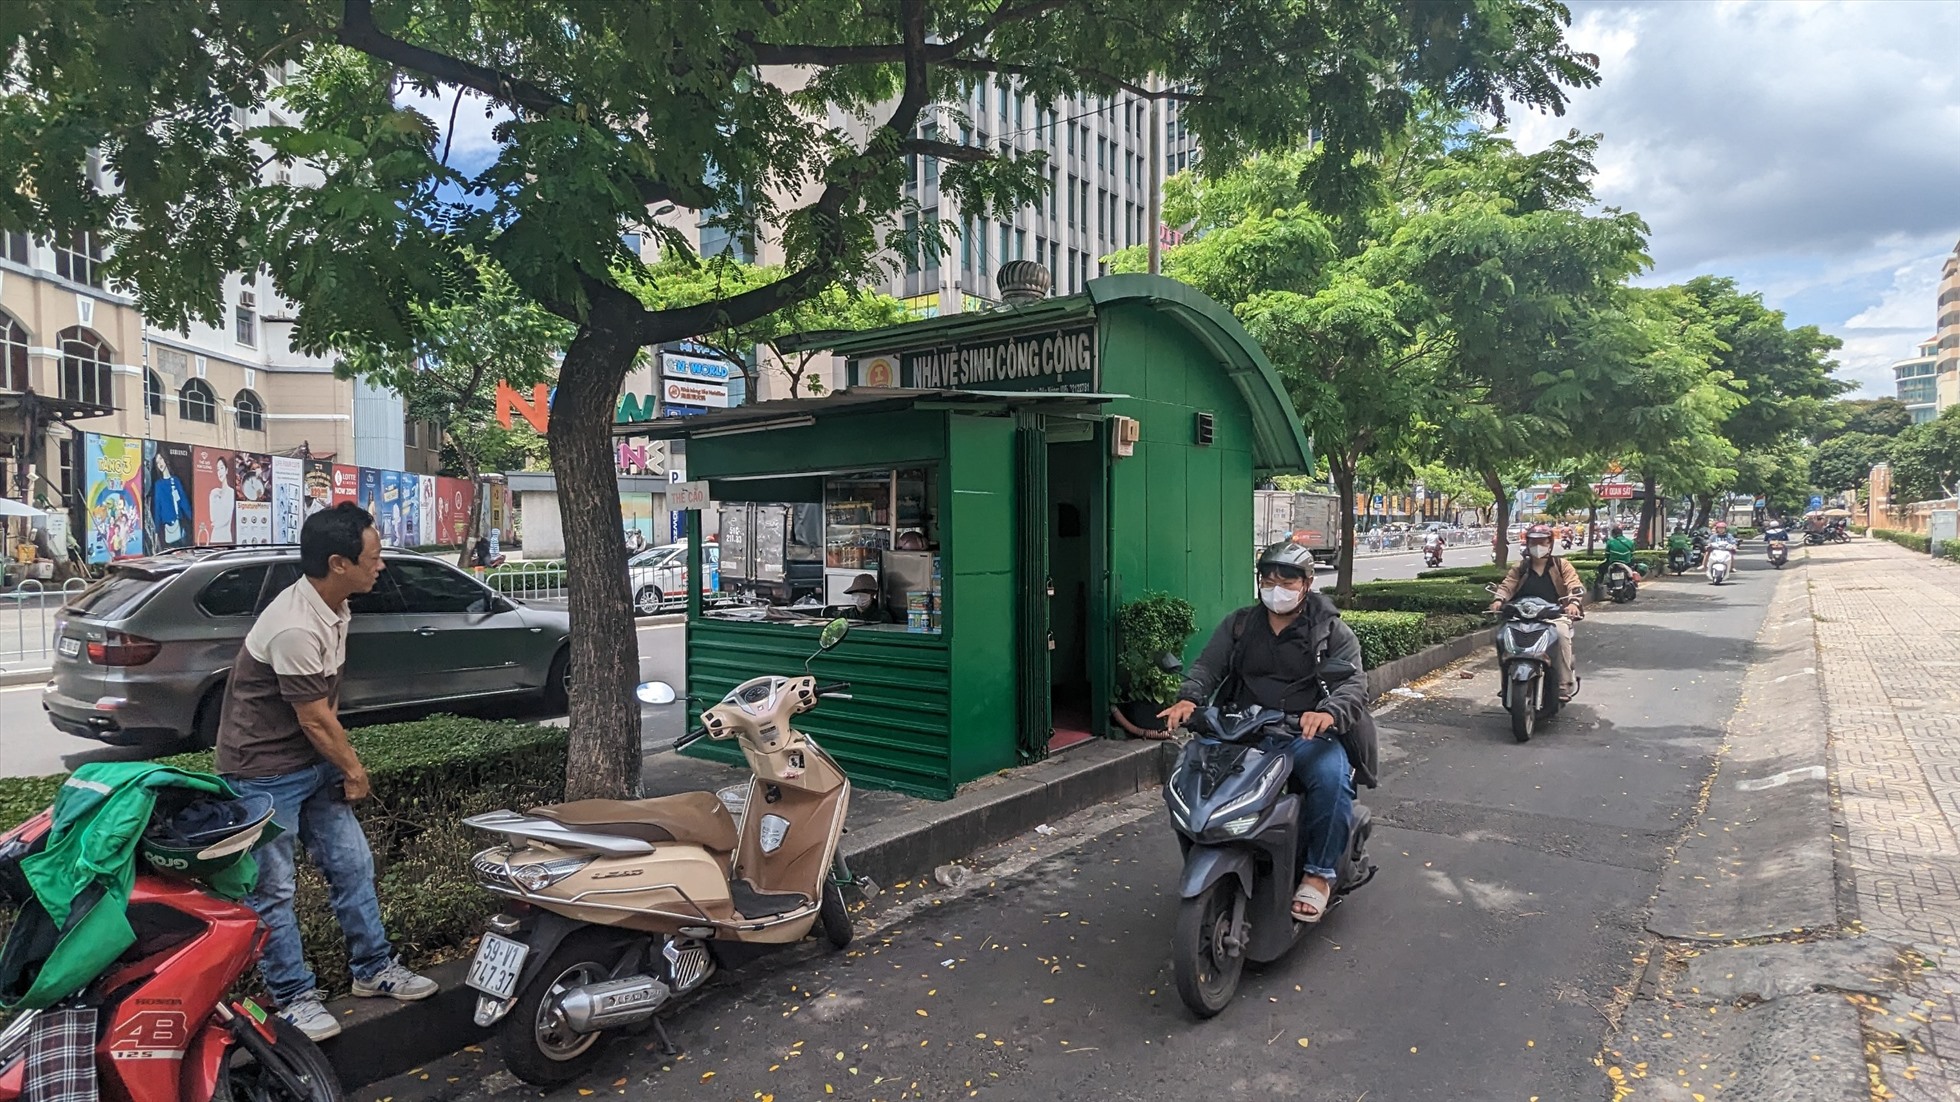 Một nhà vệ sinh công cộng miễn phí do Công ty TNHH MTV Dịch vụ công ích Thanh niên xung phong quản lý nằm trên đường Nguyễn Văn Cừ, Quận 1.